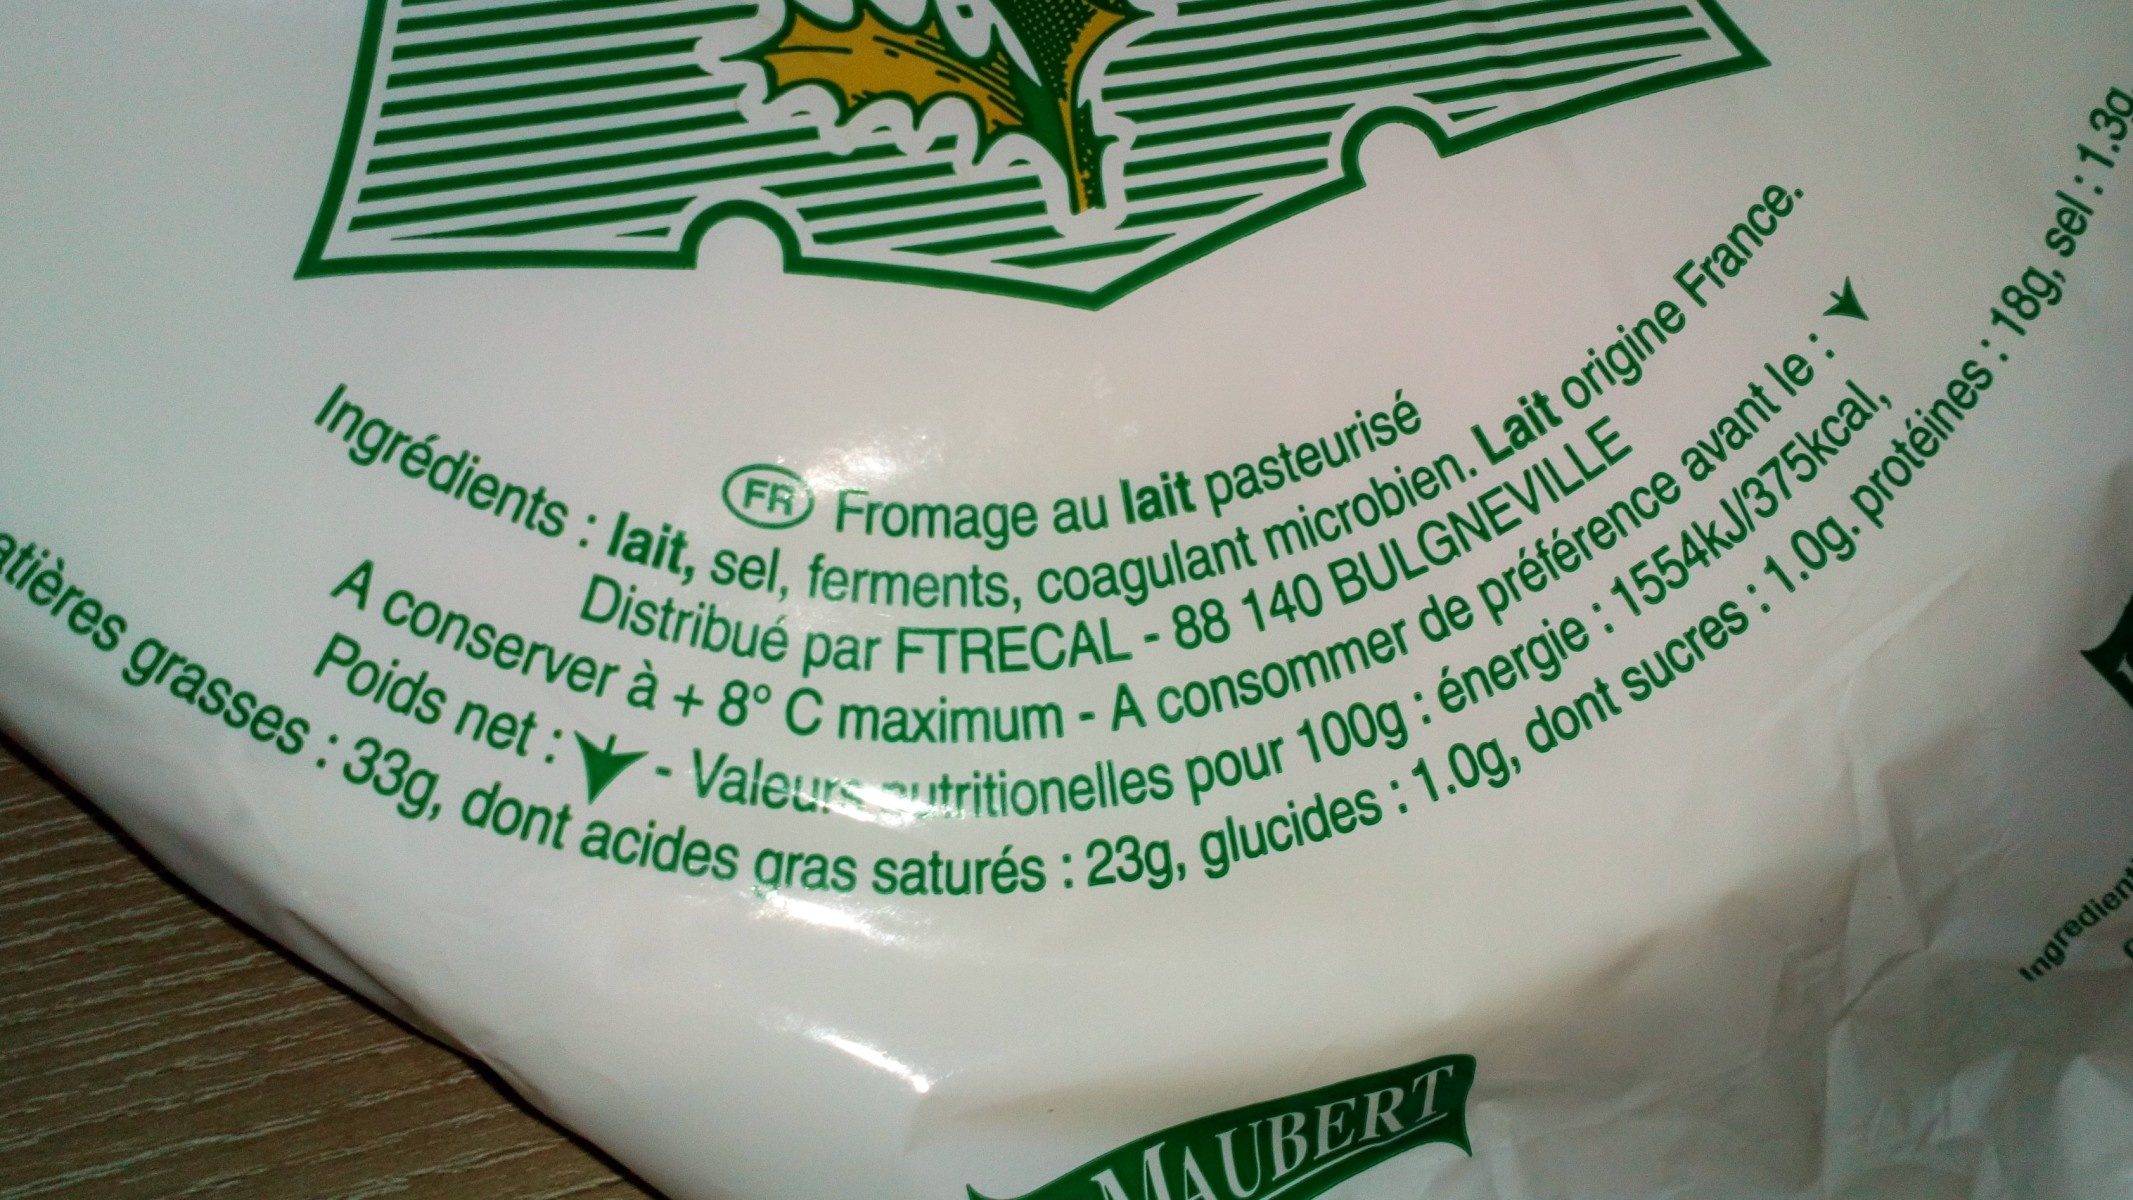 Szennyezett francia sajtot hívott vissza a Nébih